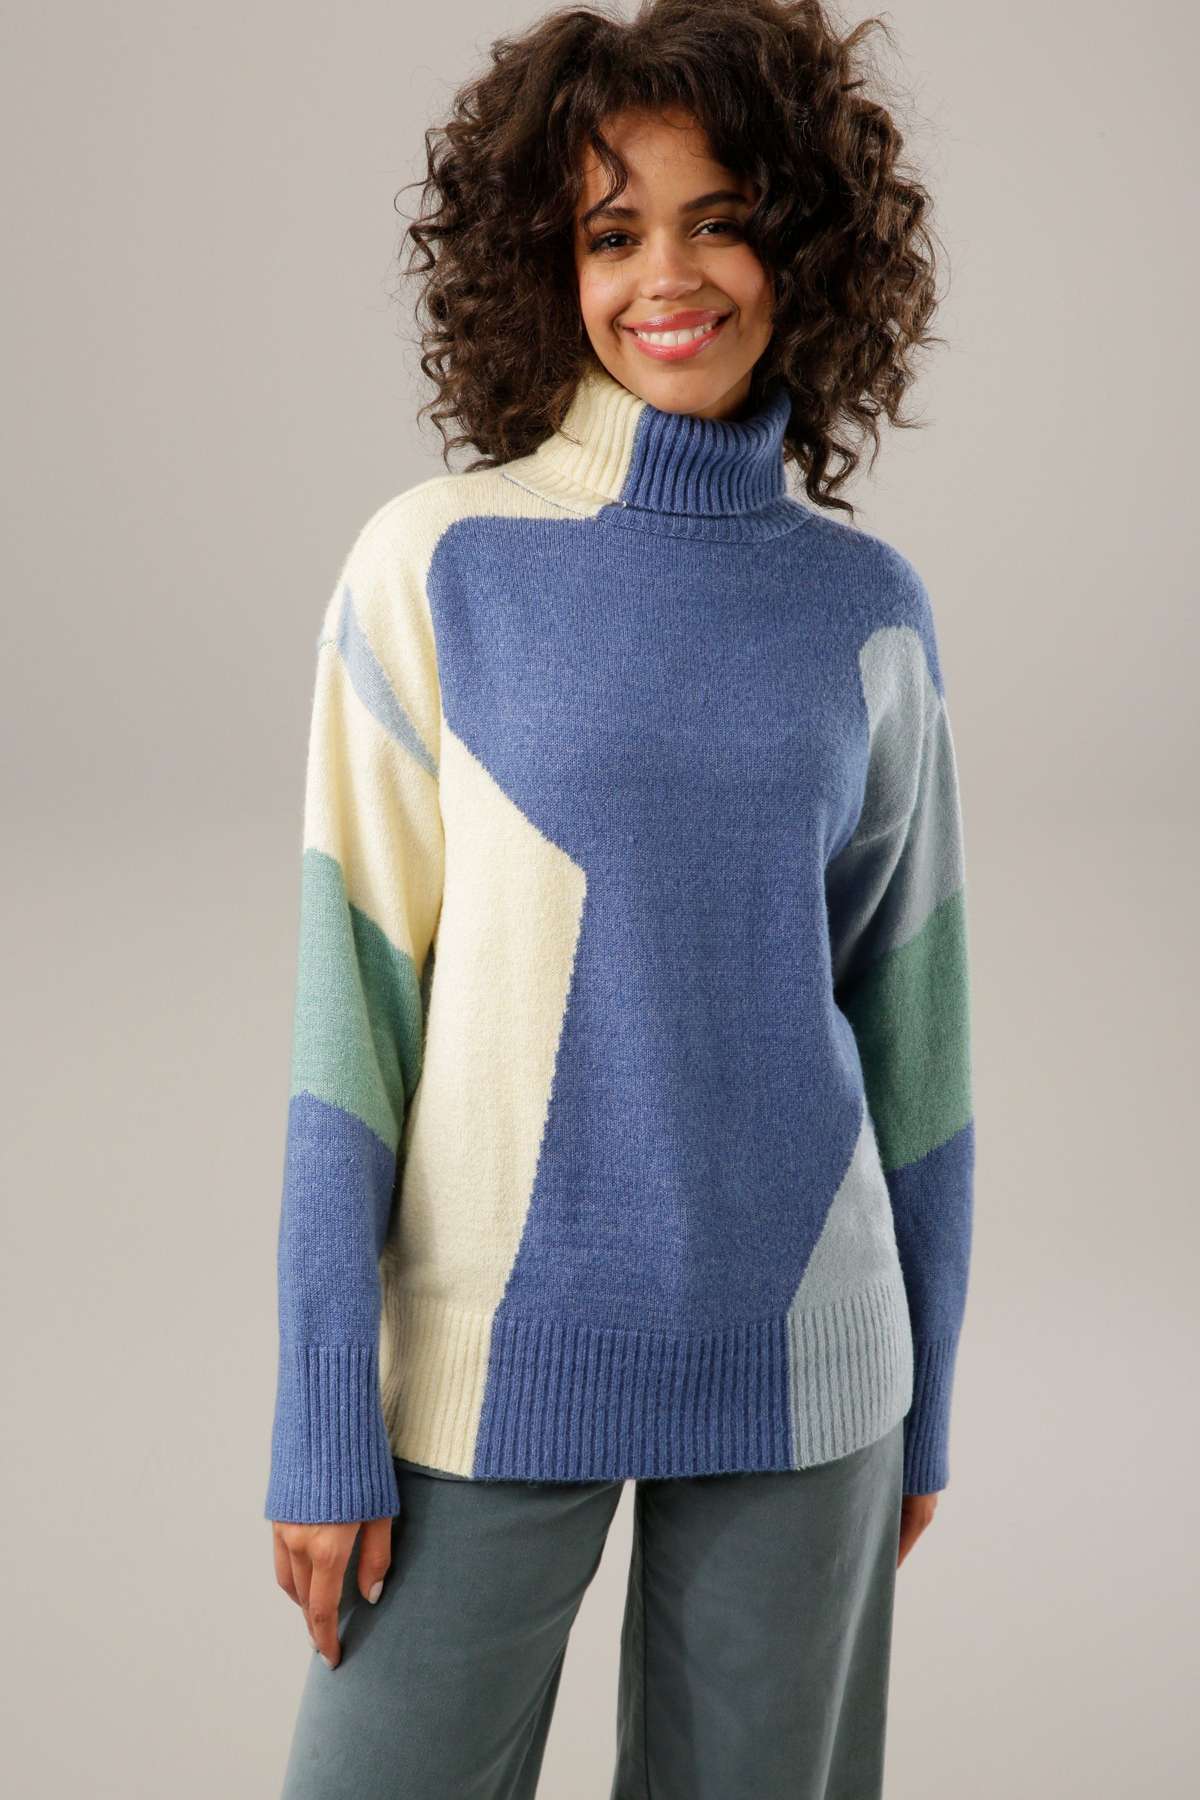 Вязаный свитер гармоничного цвета.